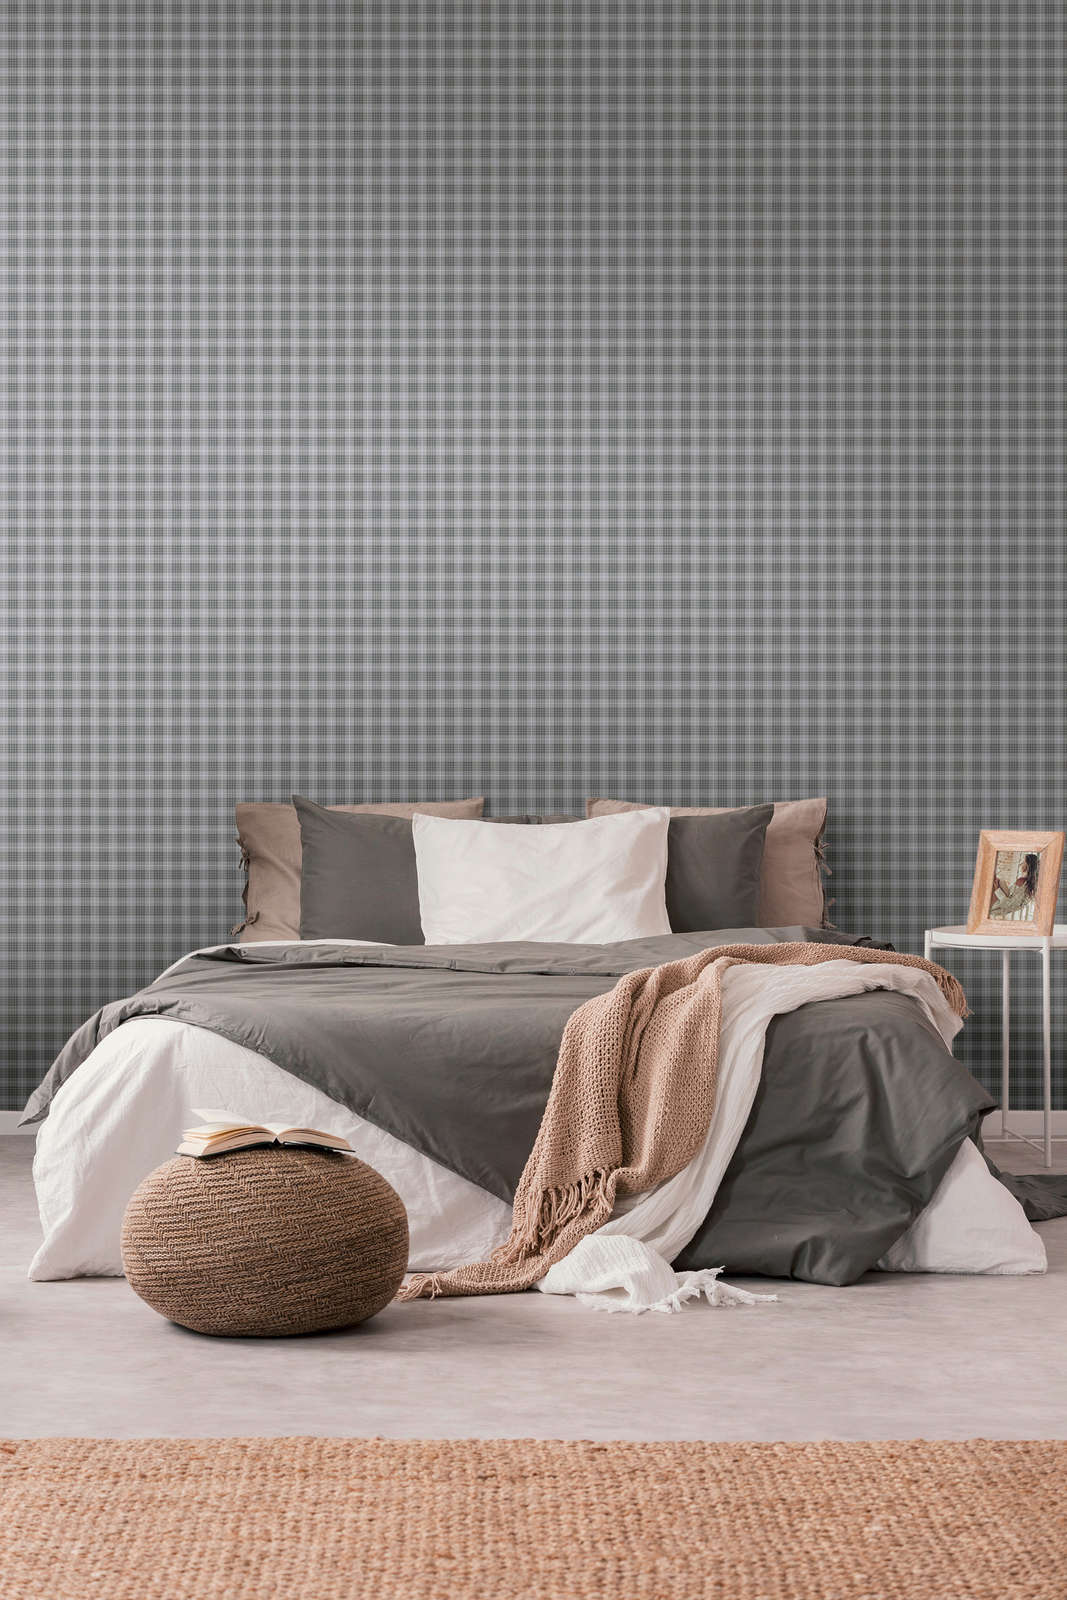             Non-woven wallpaper in Scottish fabric look check - grey, white
        